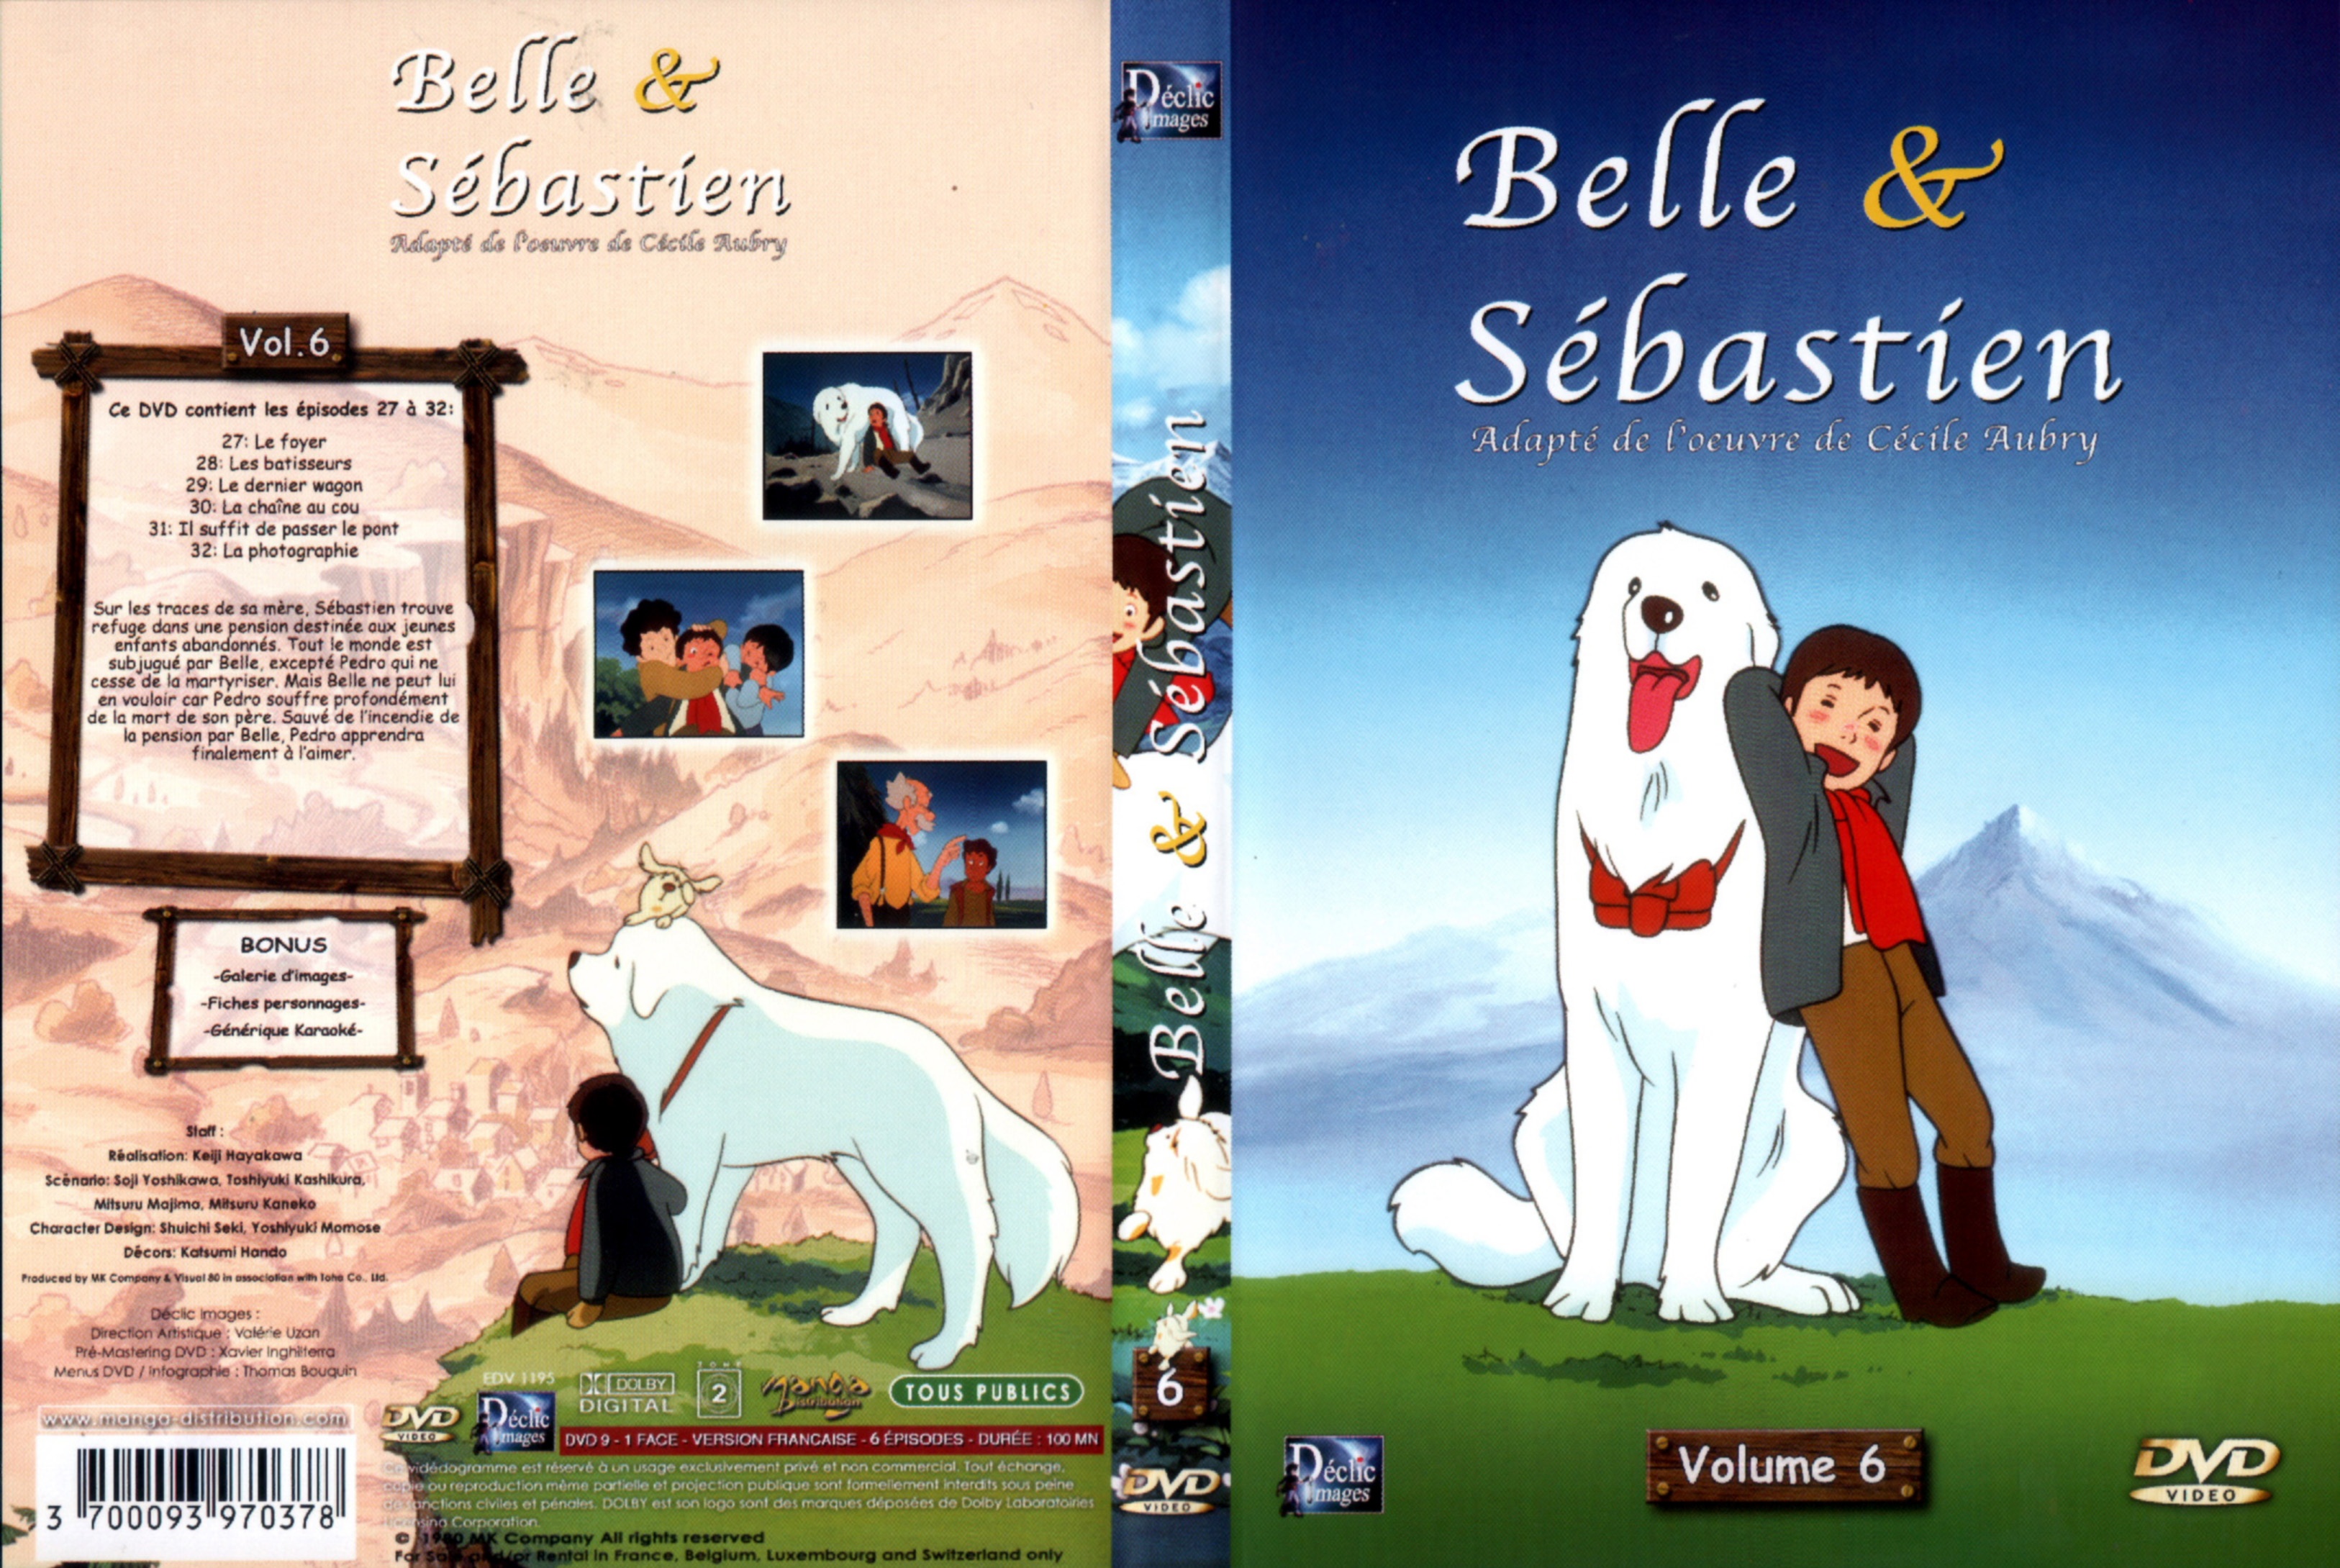 Jaquette DVD Belle et Sebastien DVD 06